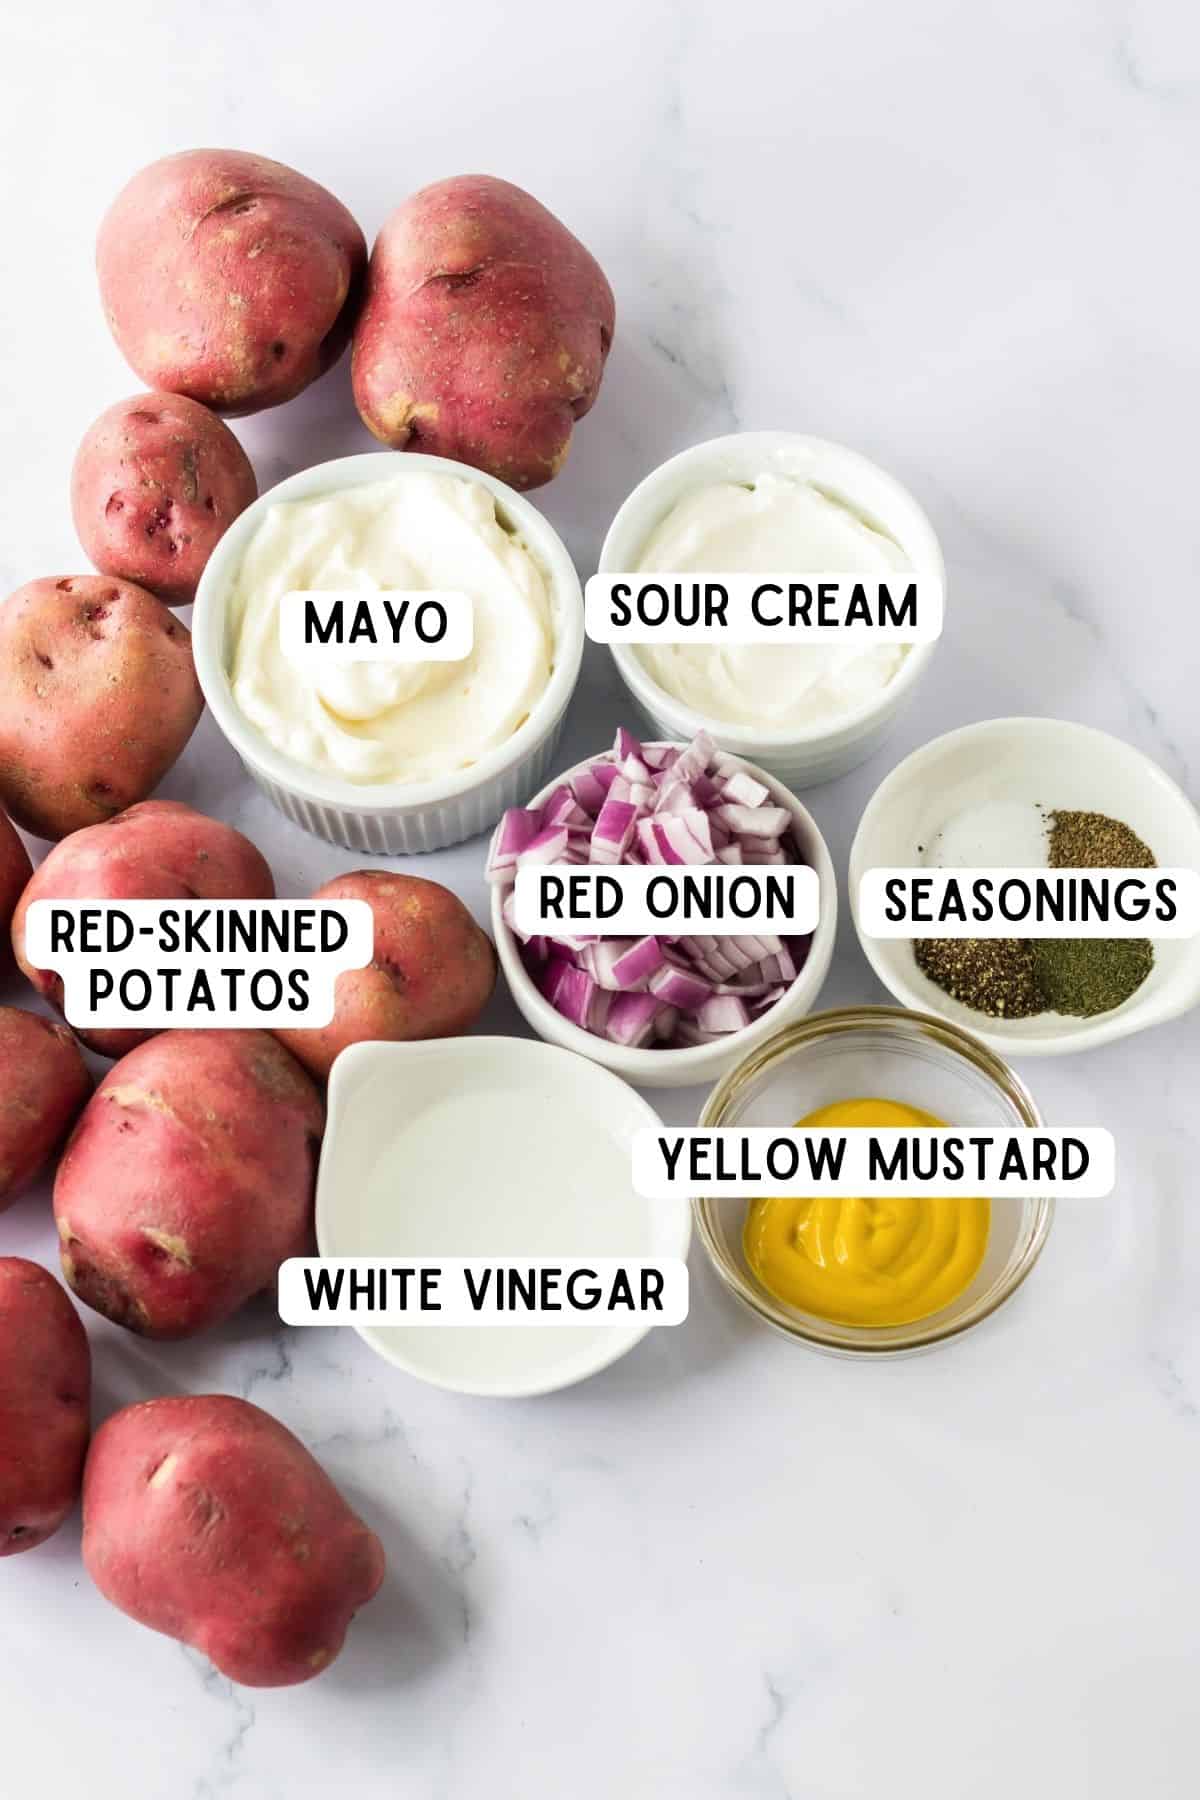 Red potatoes, mayo, sour cream, red onion, yellow mustard, white vinegar, and seasonings.